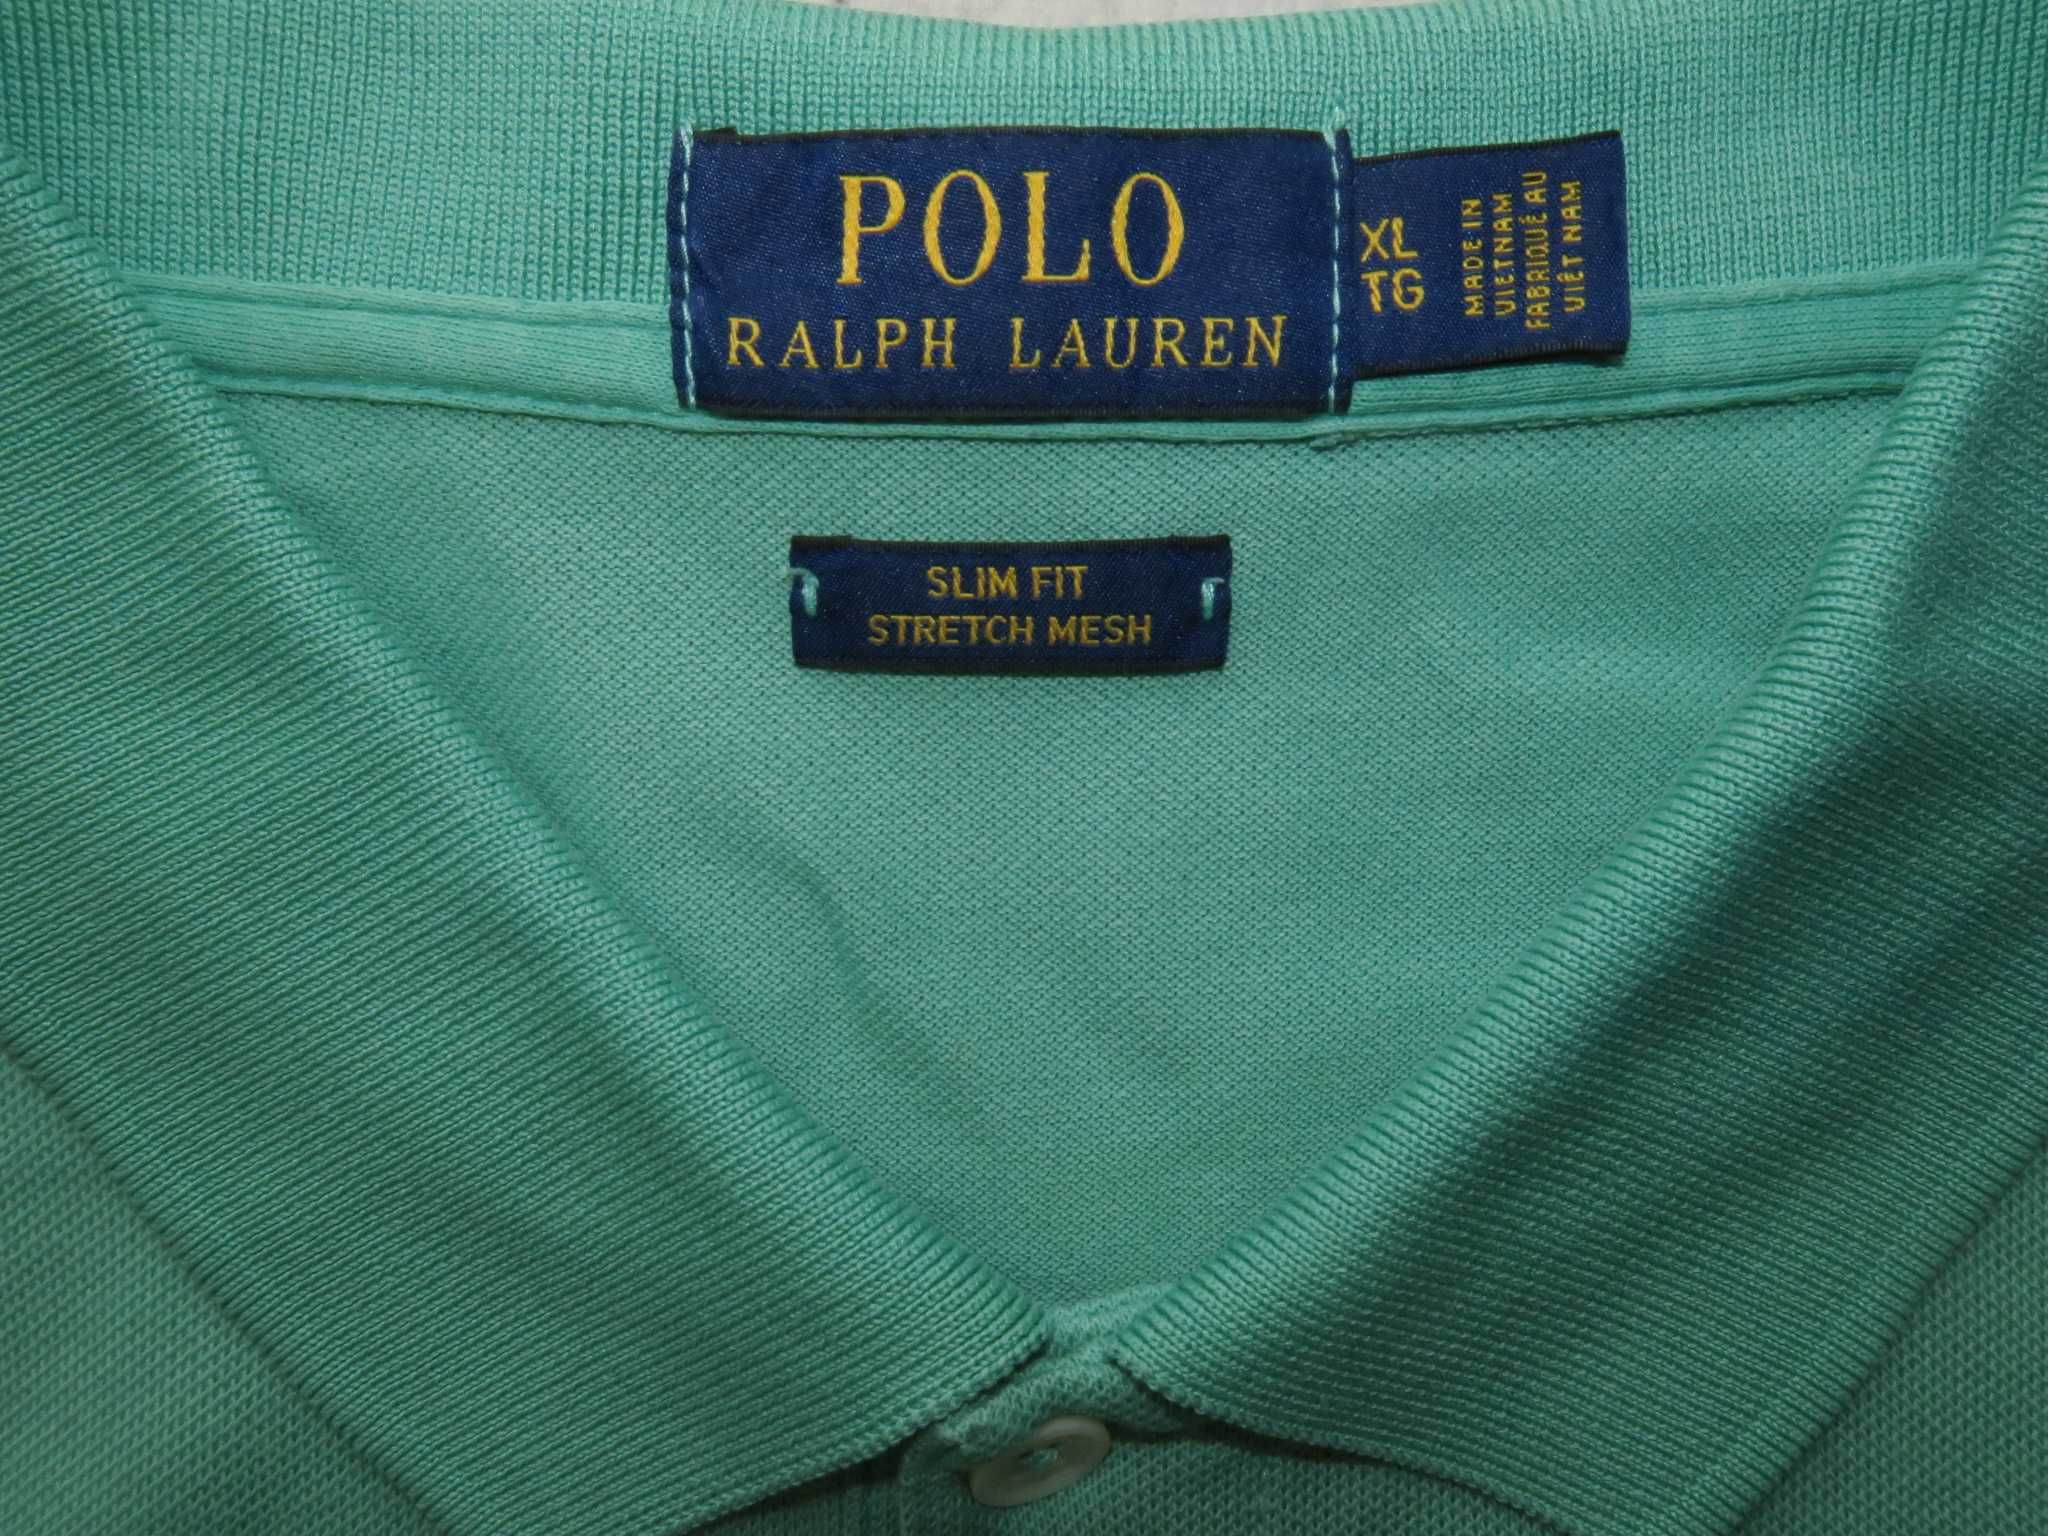 Ralph Lauren koszulka polo nowe kolekcje L/XL